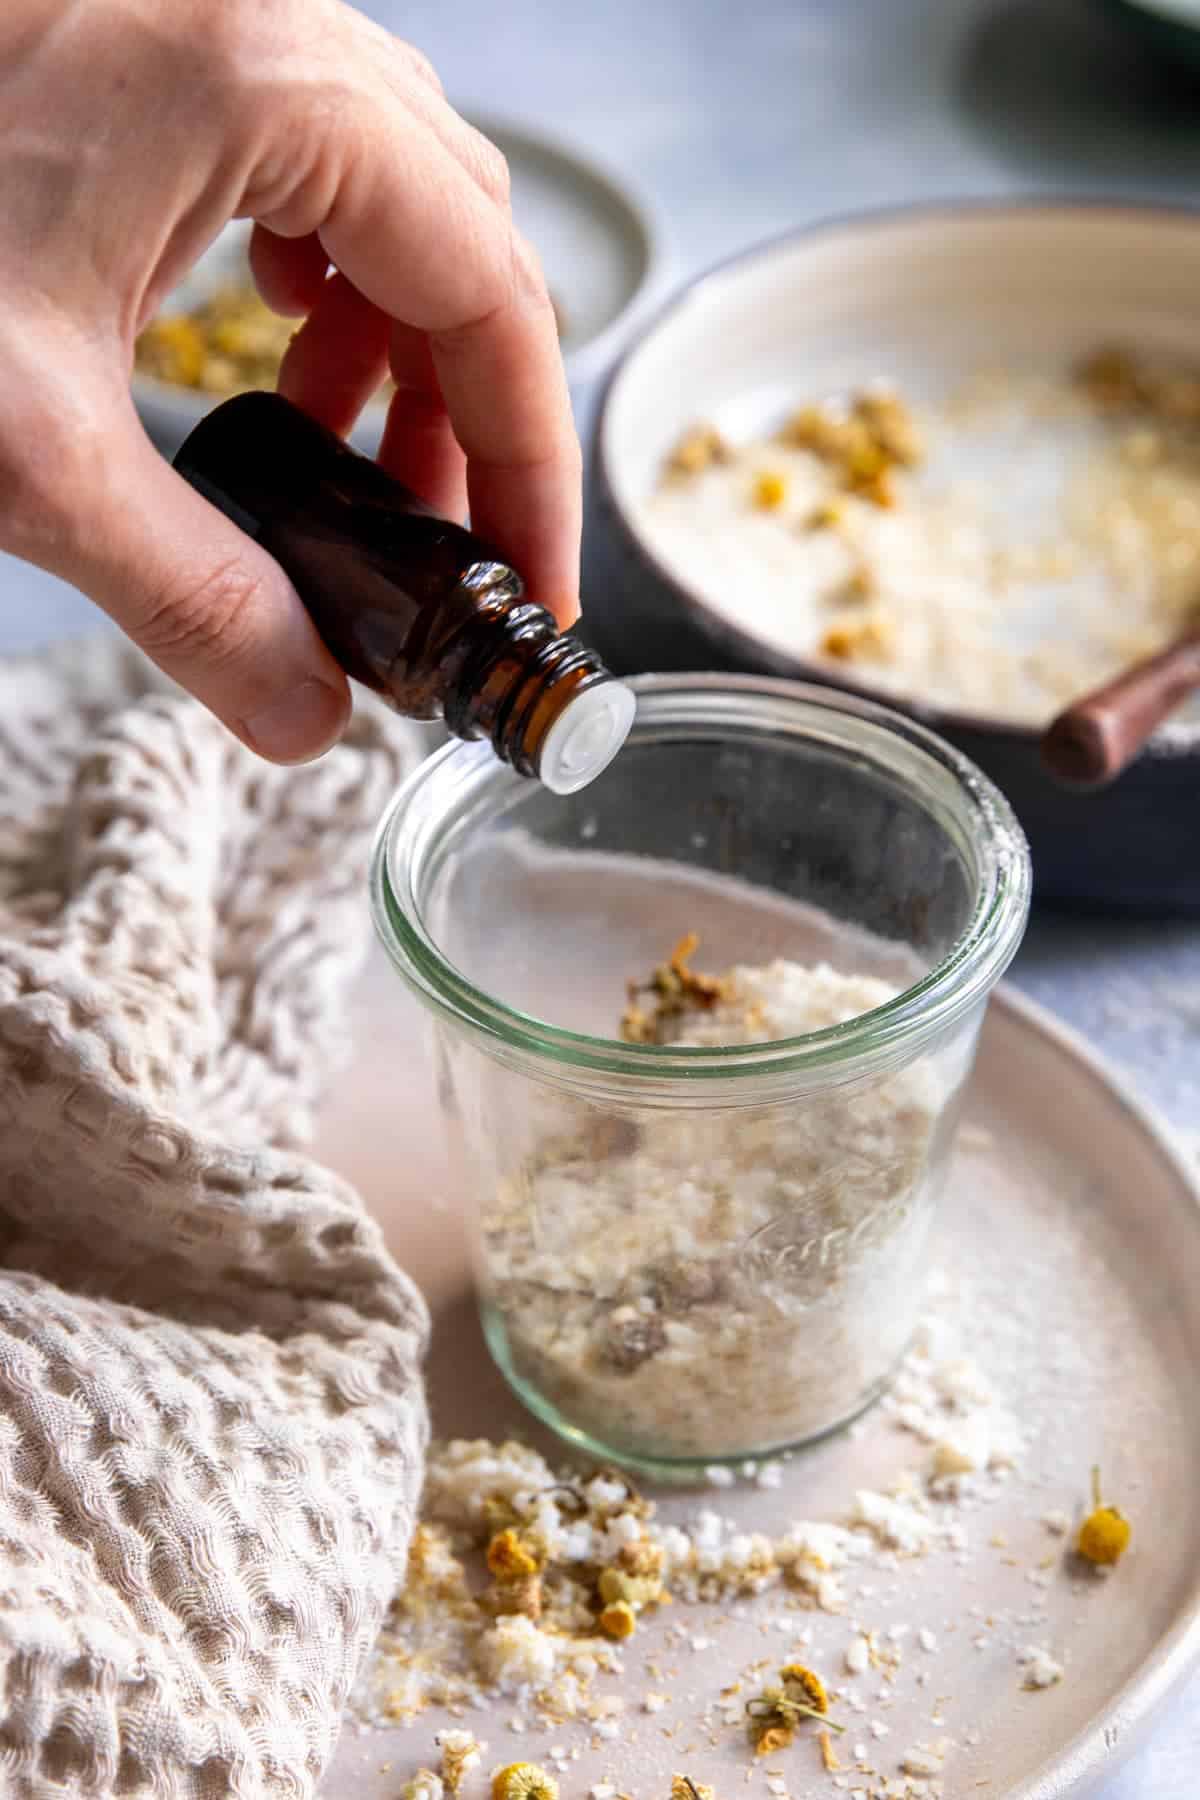 Adding essential oils to a diy rice flour scrub recipe